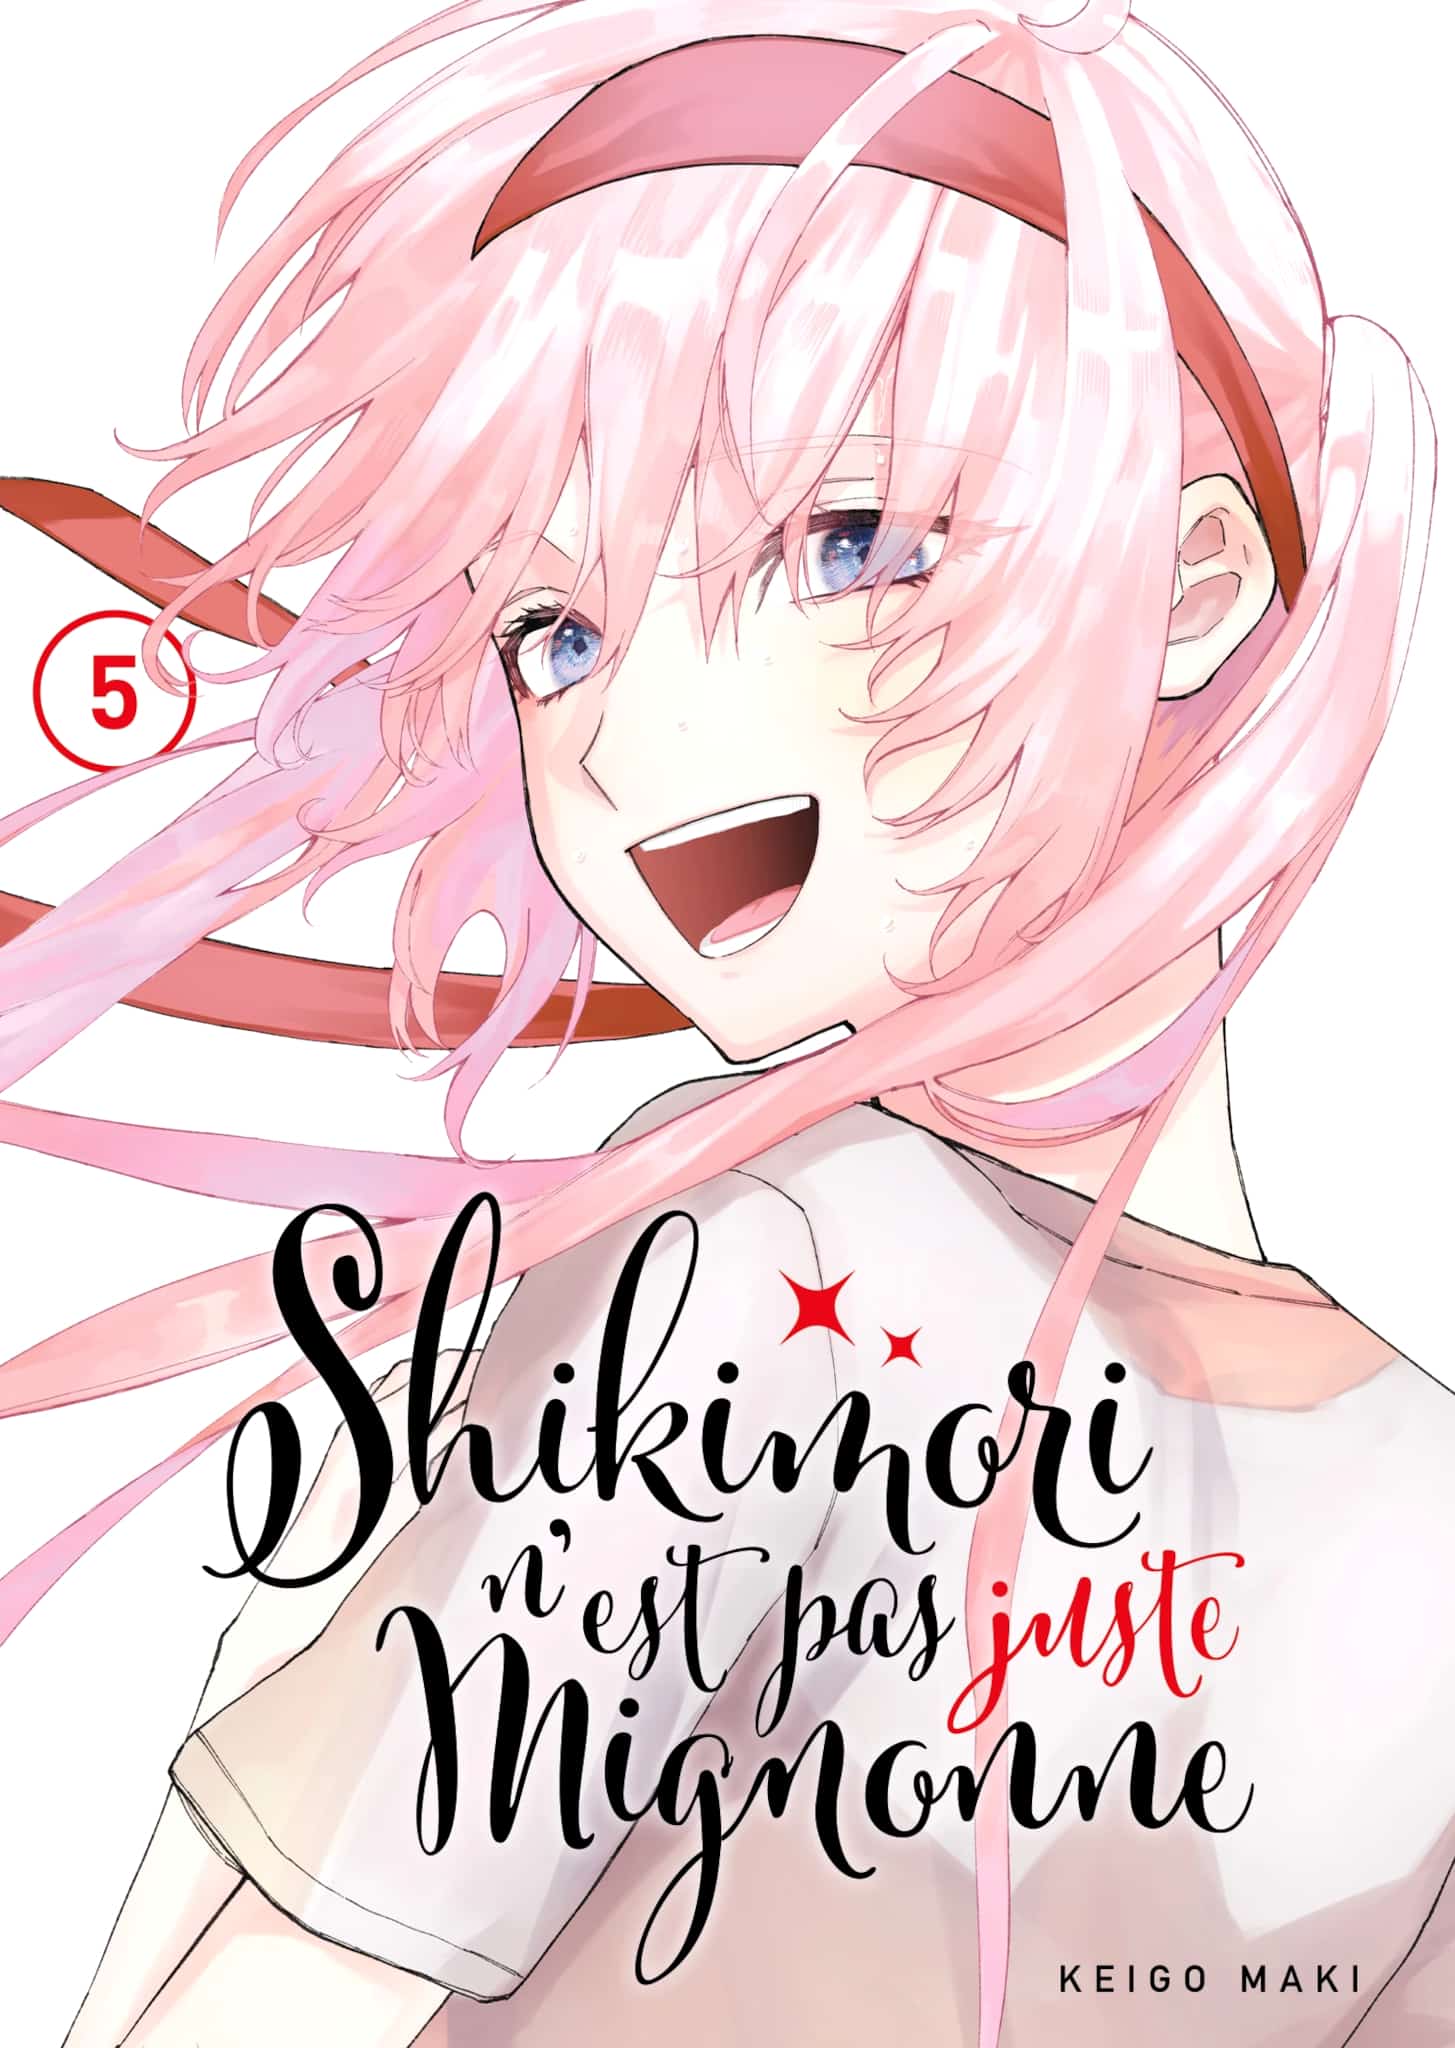 Tome 5 du manga Shikimori nest pas juste mignonne